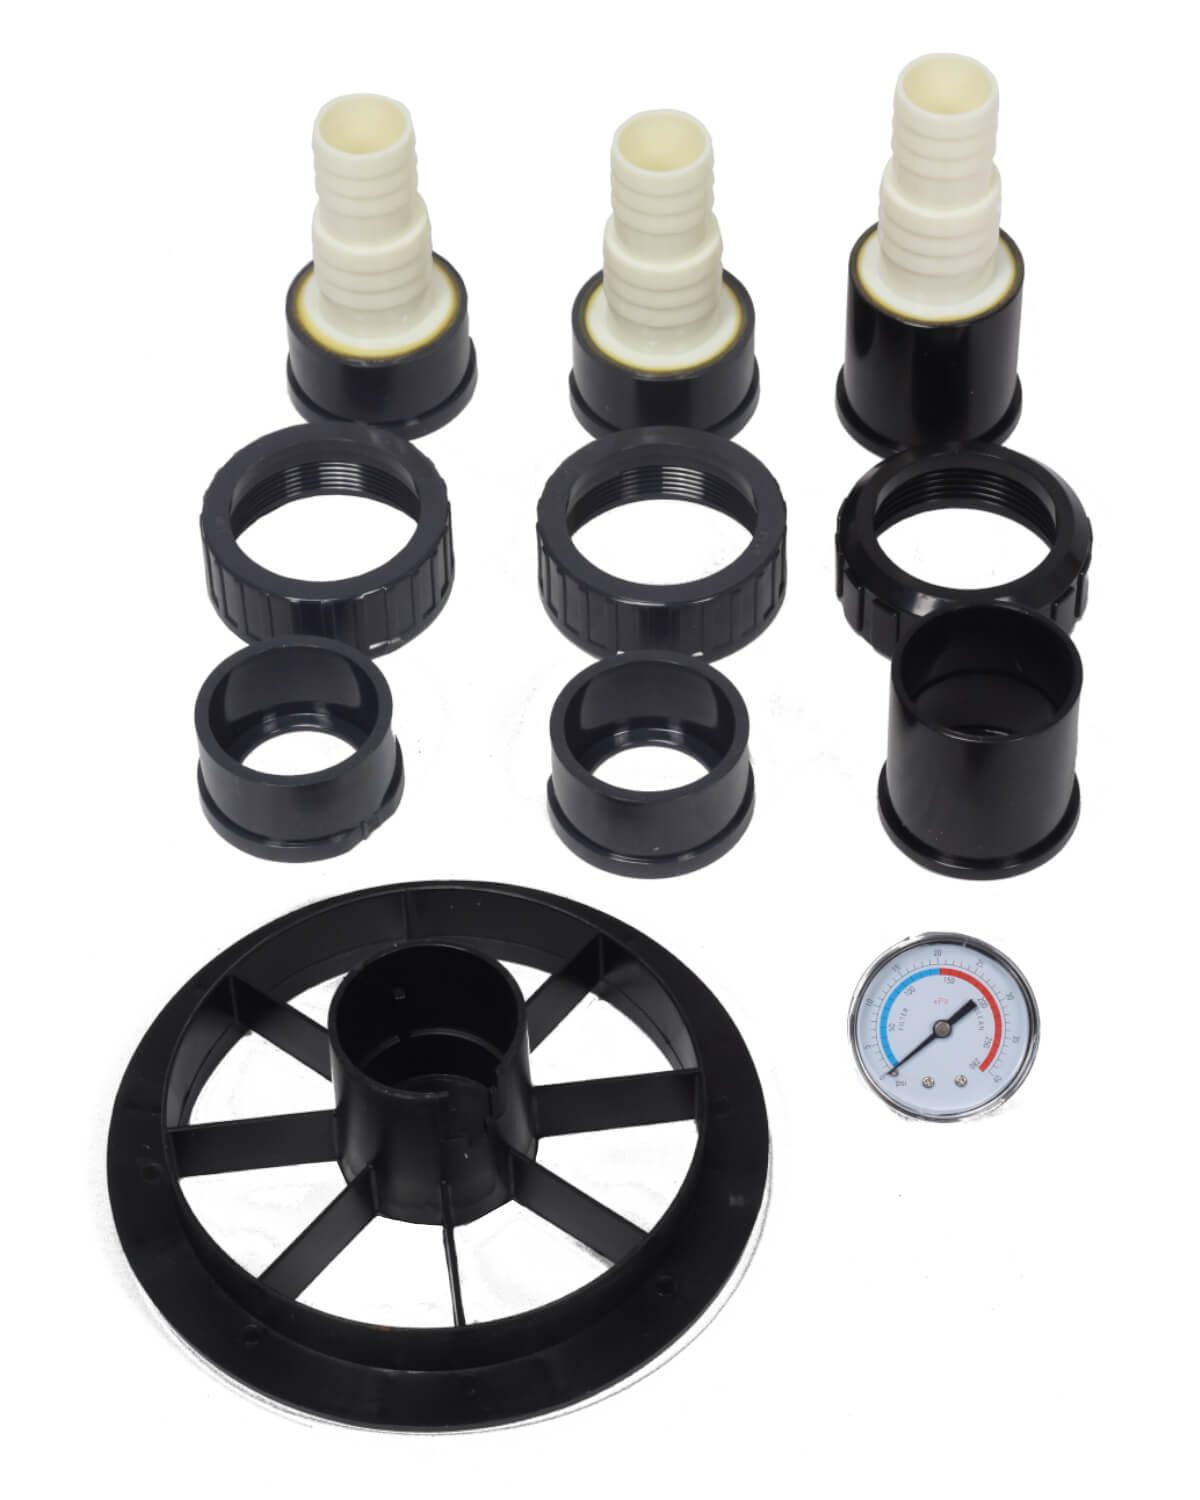 Ein Satz schwarzer Kunststoffteile für ein Manometer des Typs PURION Pool 40 PVC-U Basic, hergestellt von der PURION GmbH.